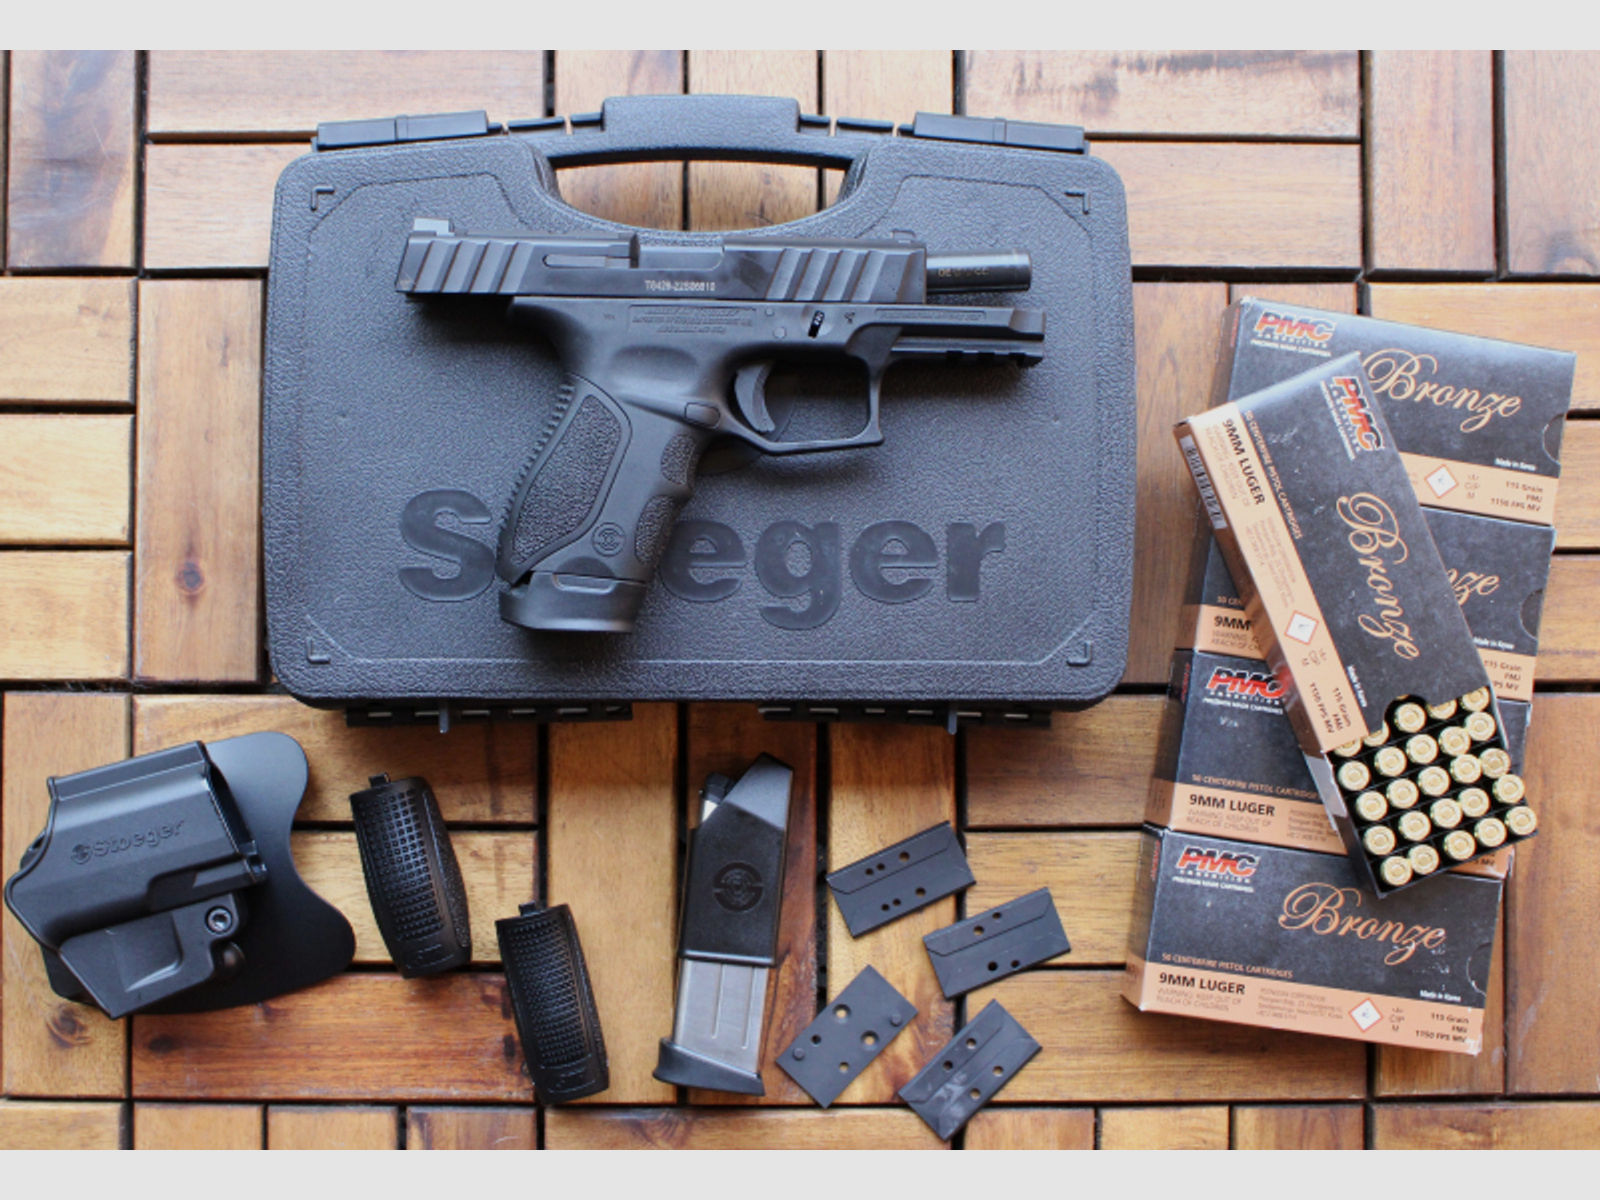 Halbautomatische Pistole, von Stoeger mit Holster, Ersatzmagazin, Koffer und 250 Schuss 9 mm Luger